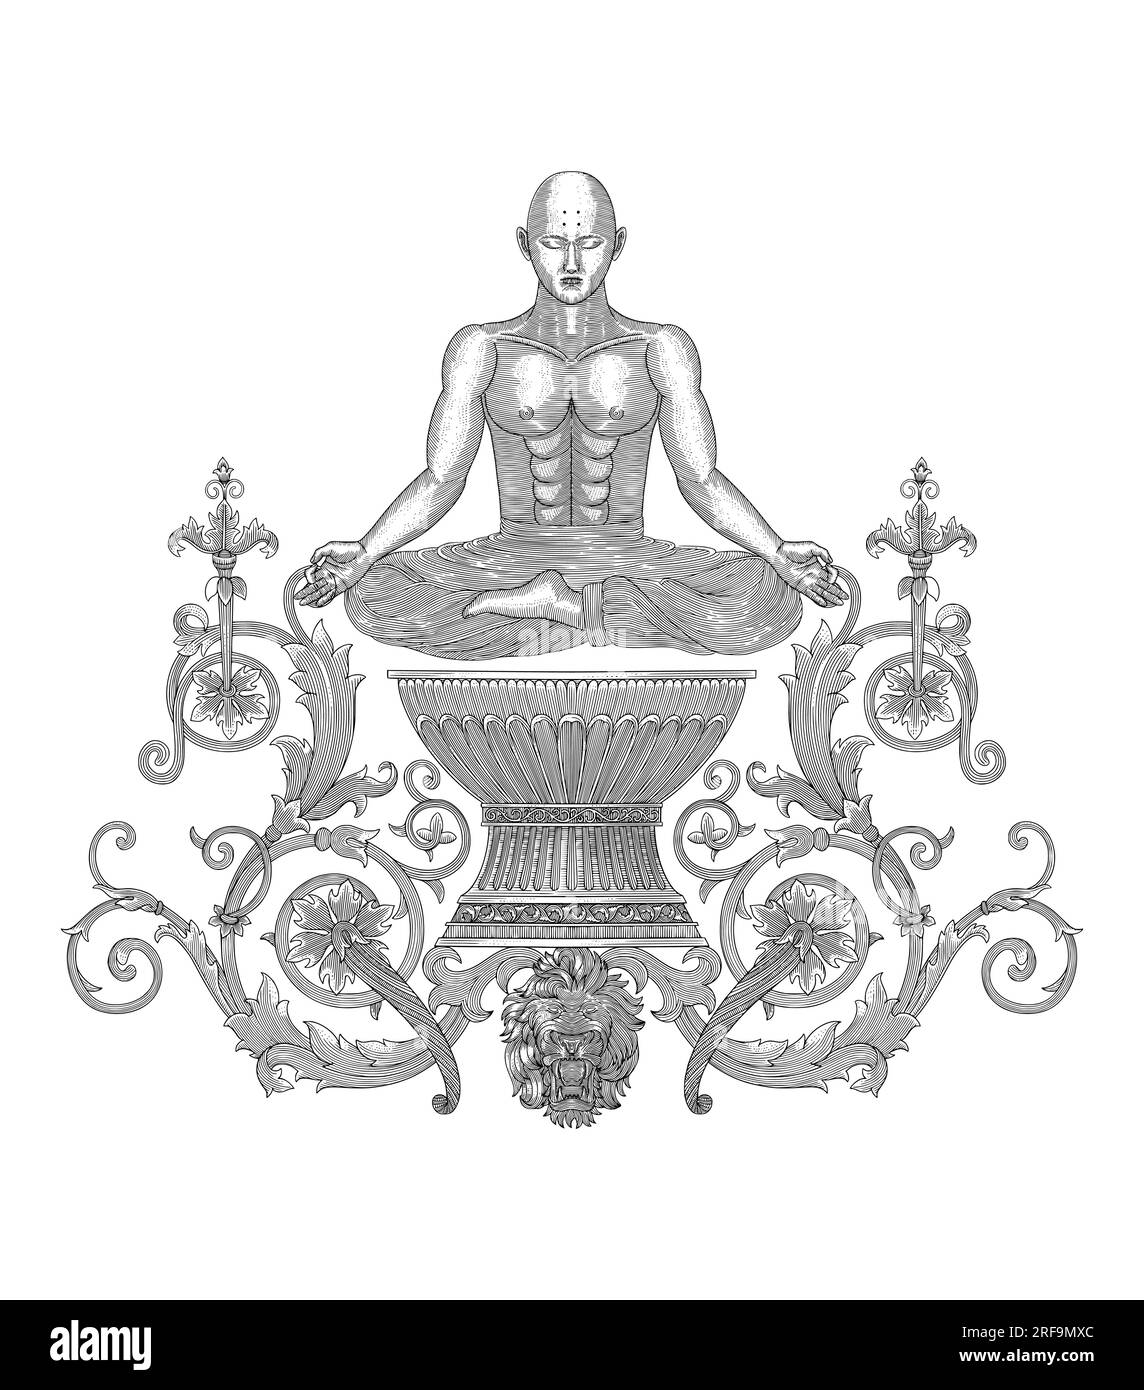 Méditation bouddhiste moine sur vase antique avec ornements floraux et lion. illustration de style dessin gravure vintage Illustration de Vecteur